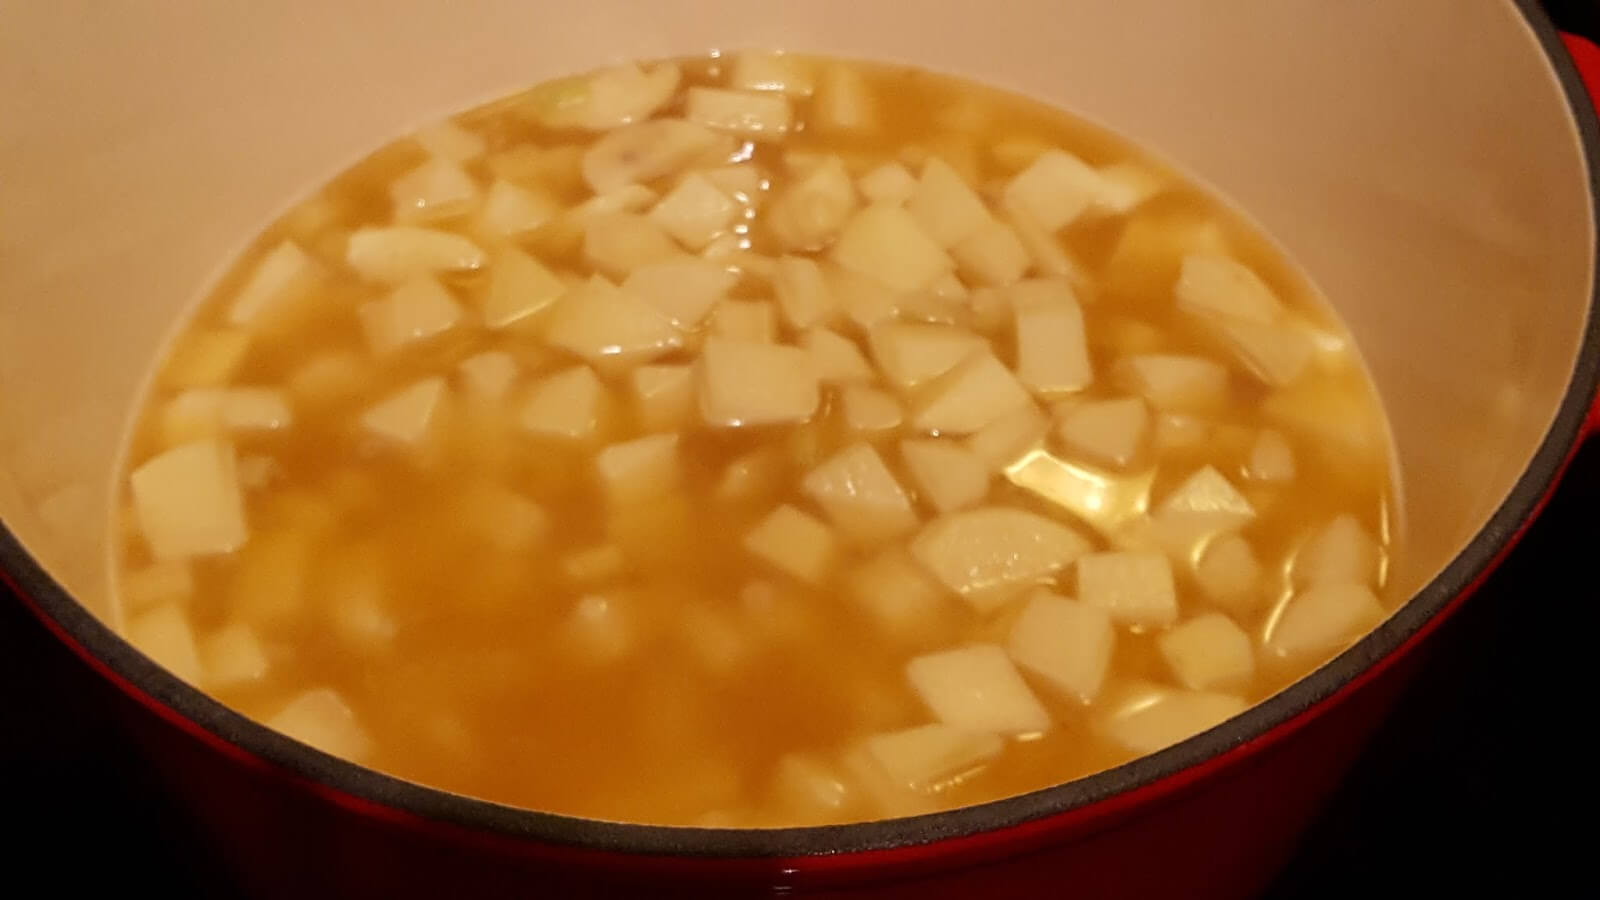 How to make potato soup